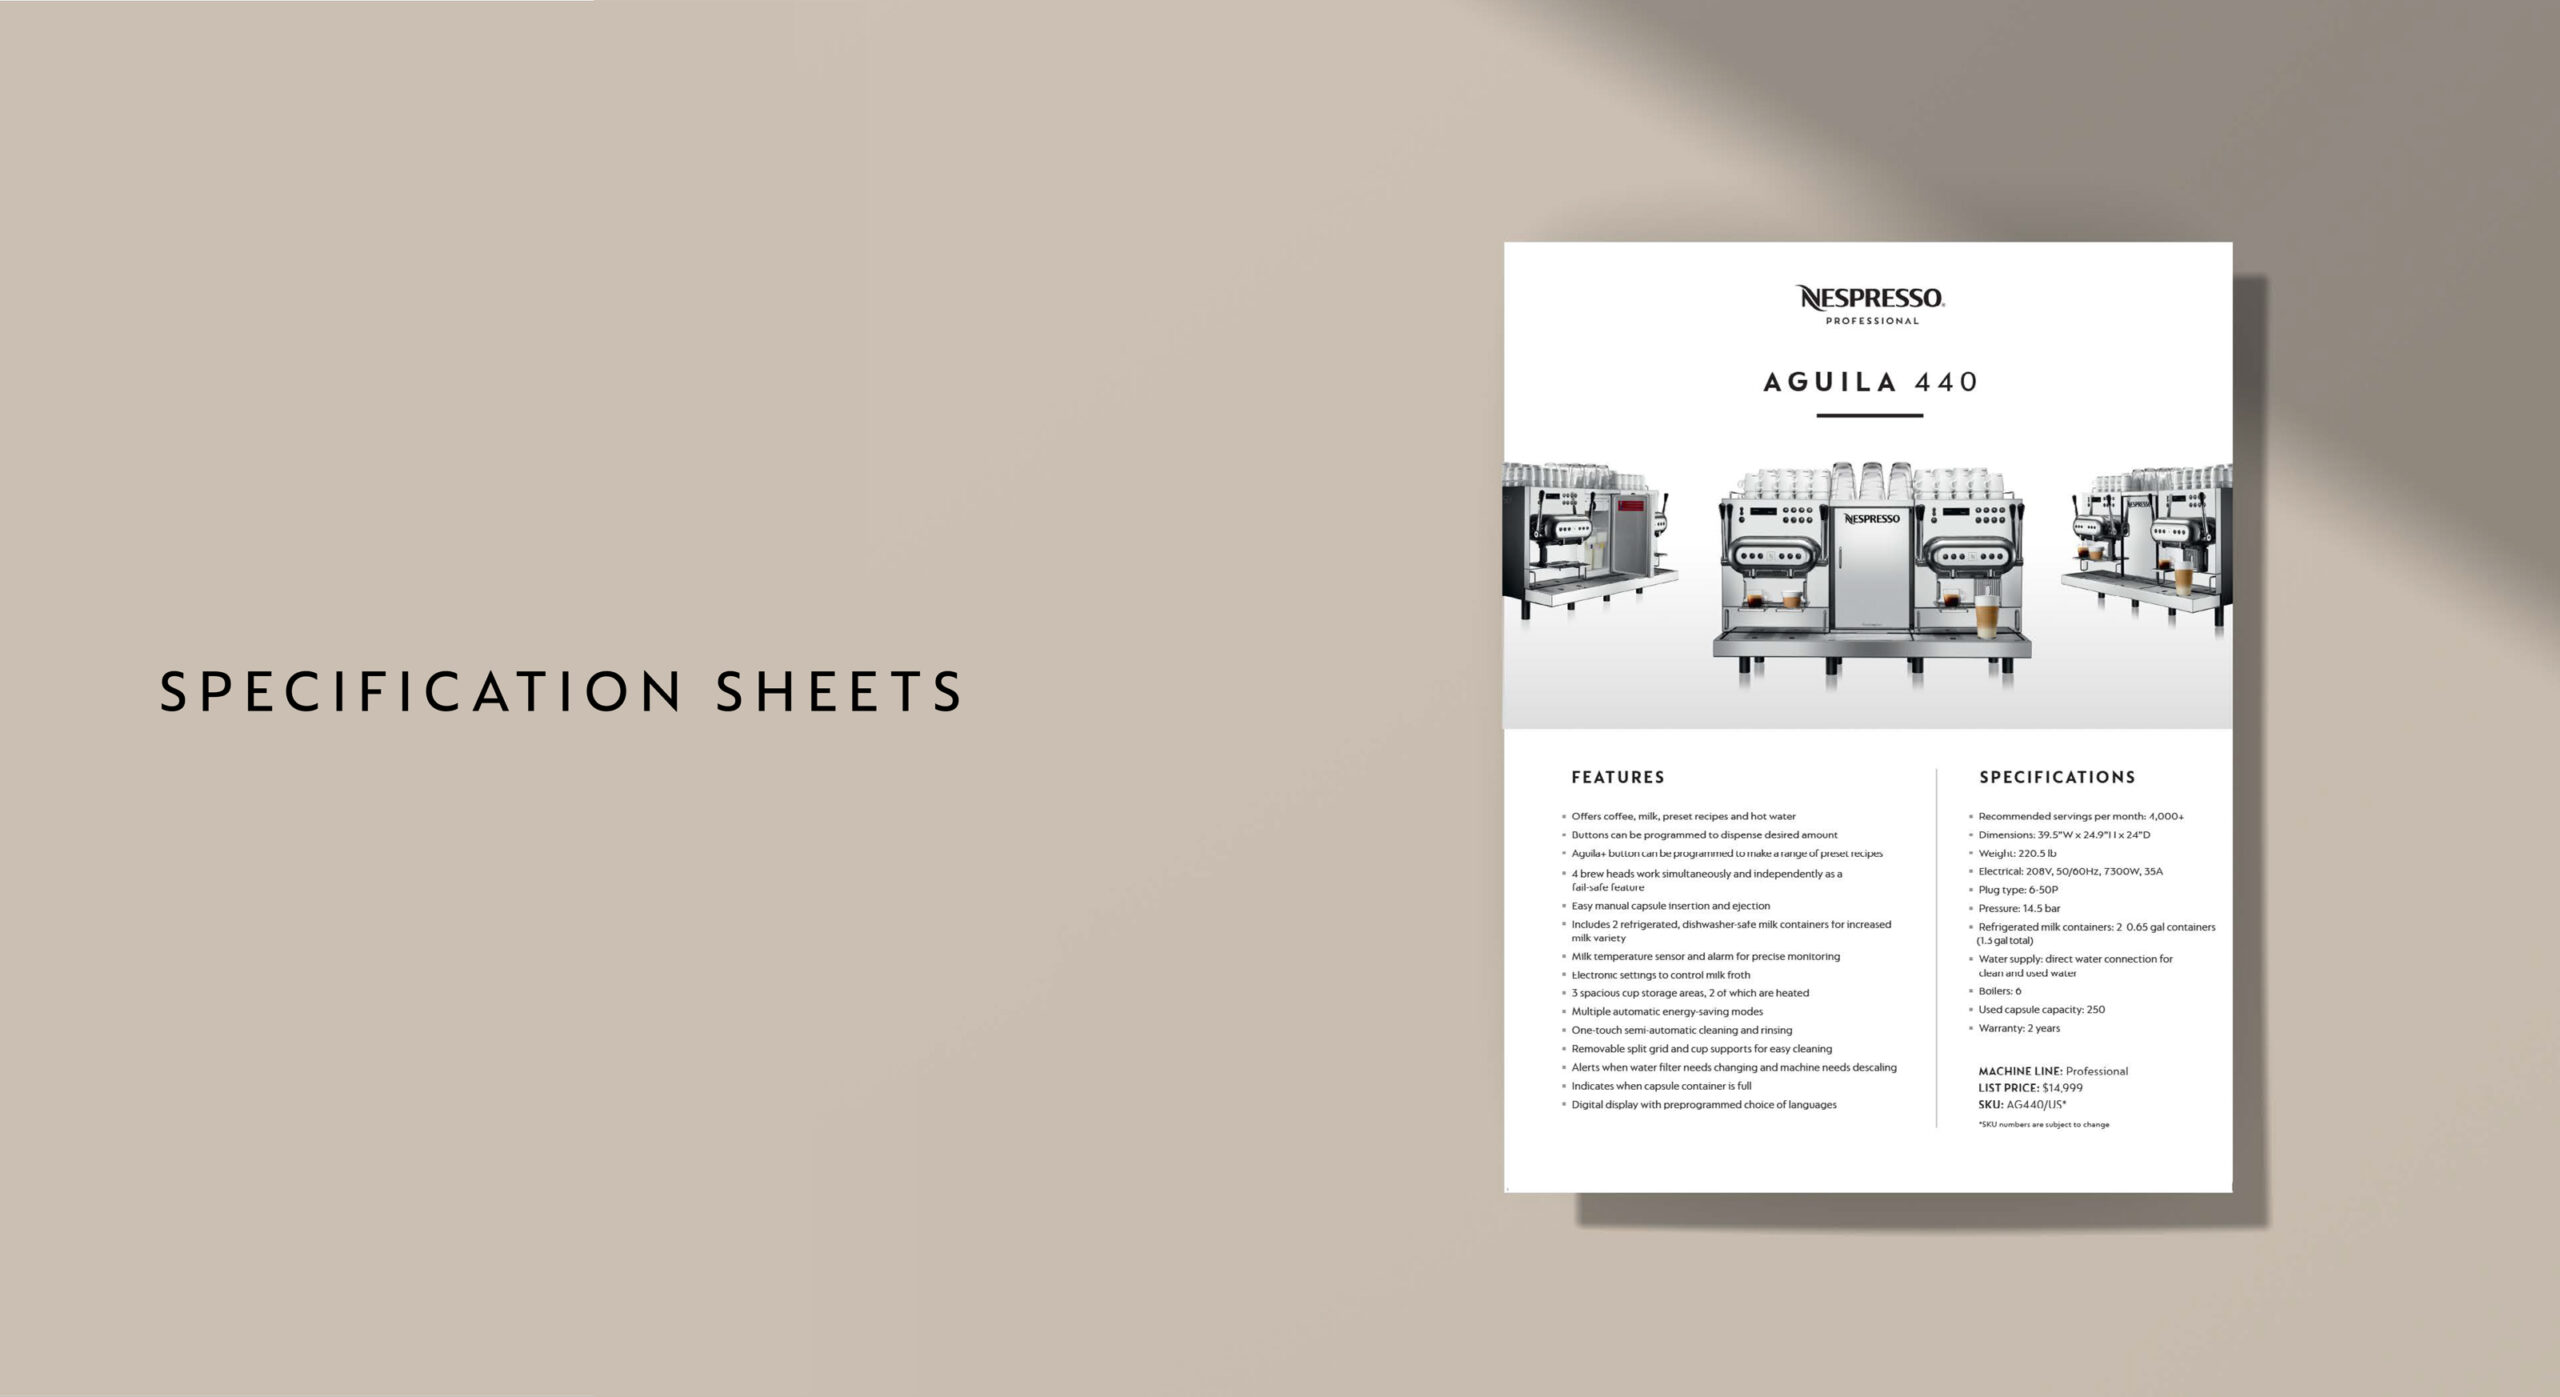 Spec sheet design for Nespresso